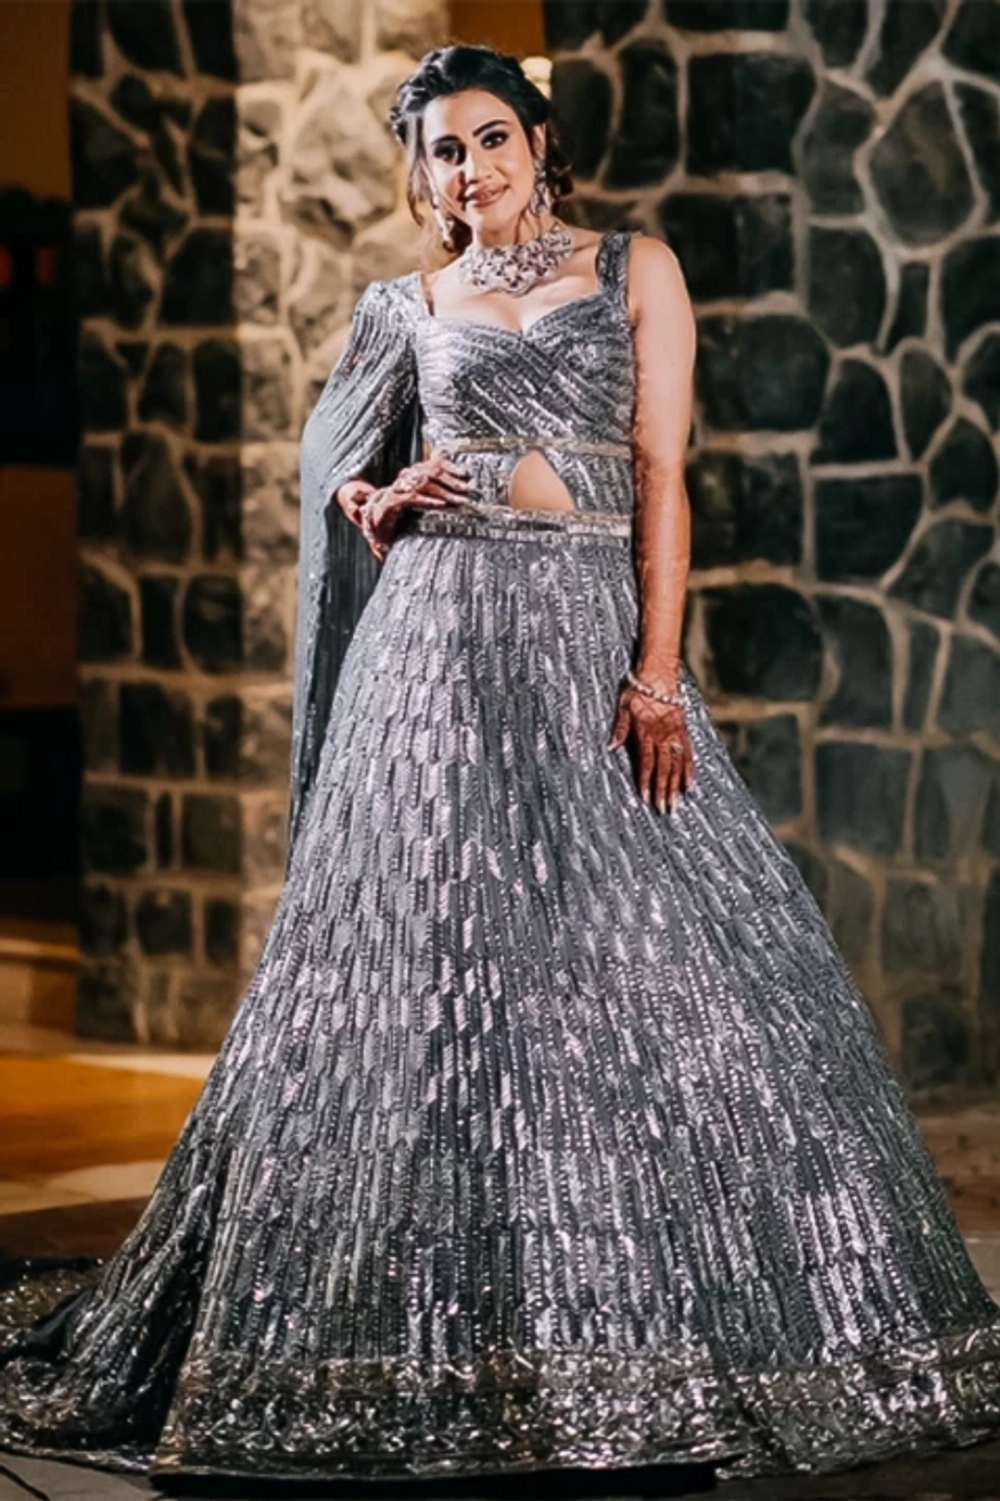 Bride: Deeksha Pandey in our Showstopper Nooraniyat Gown